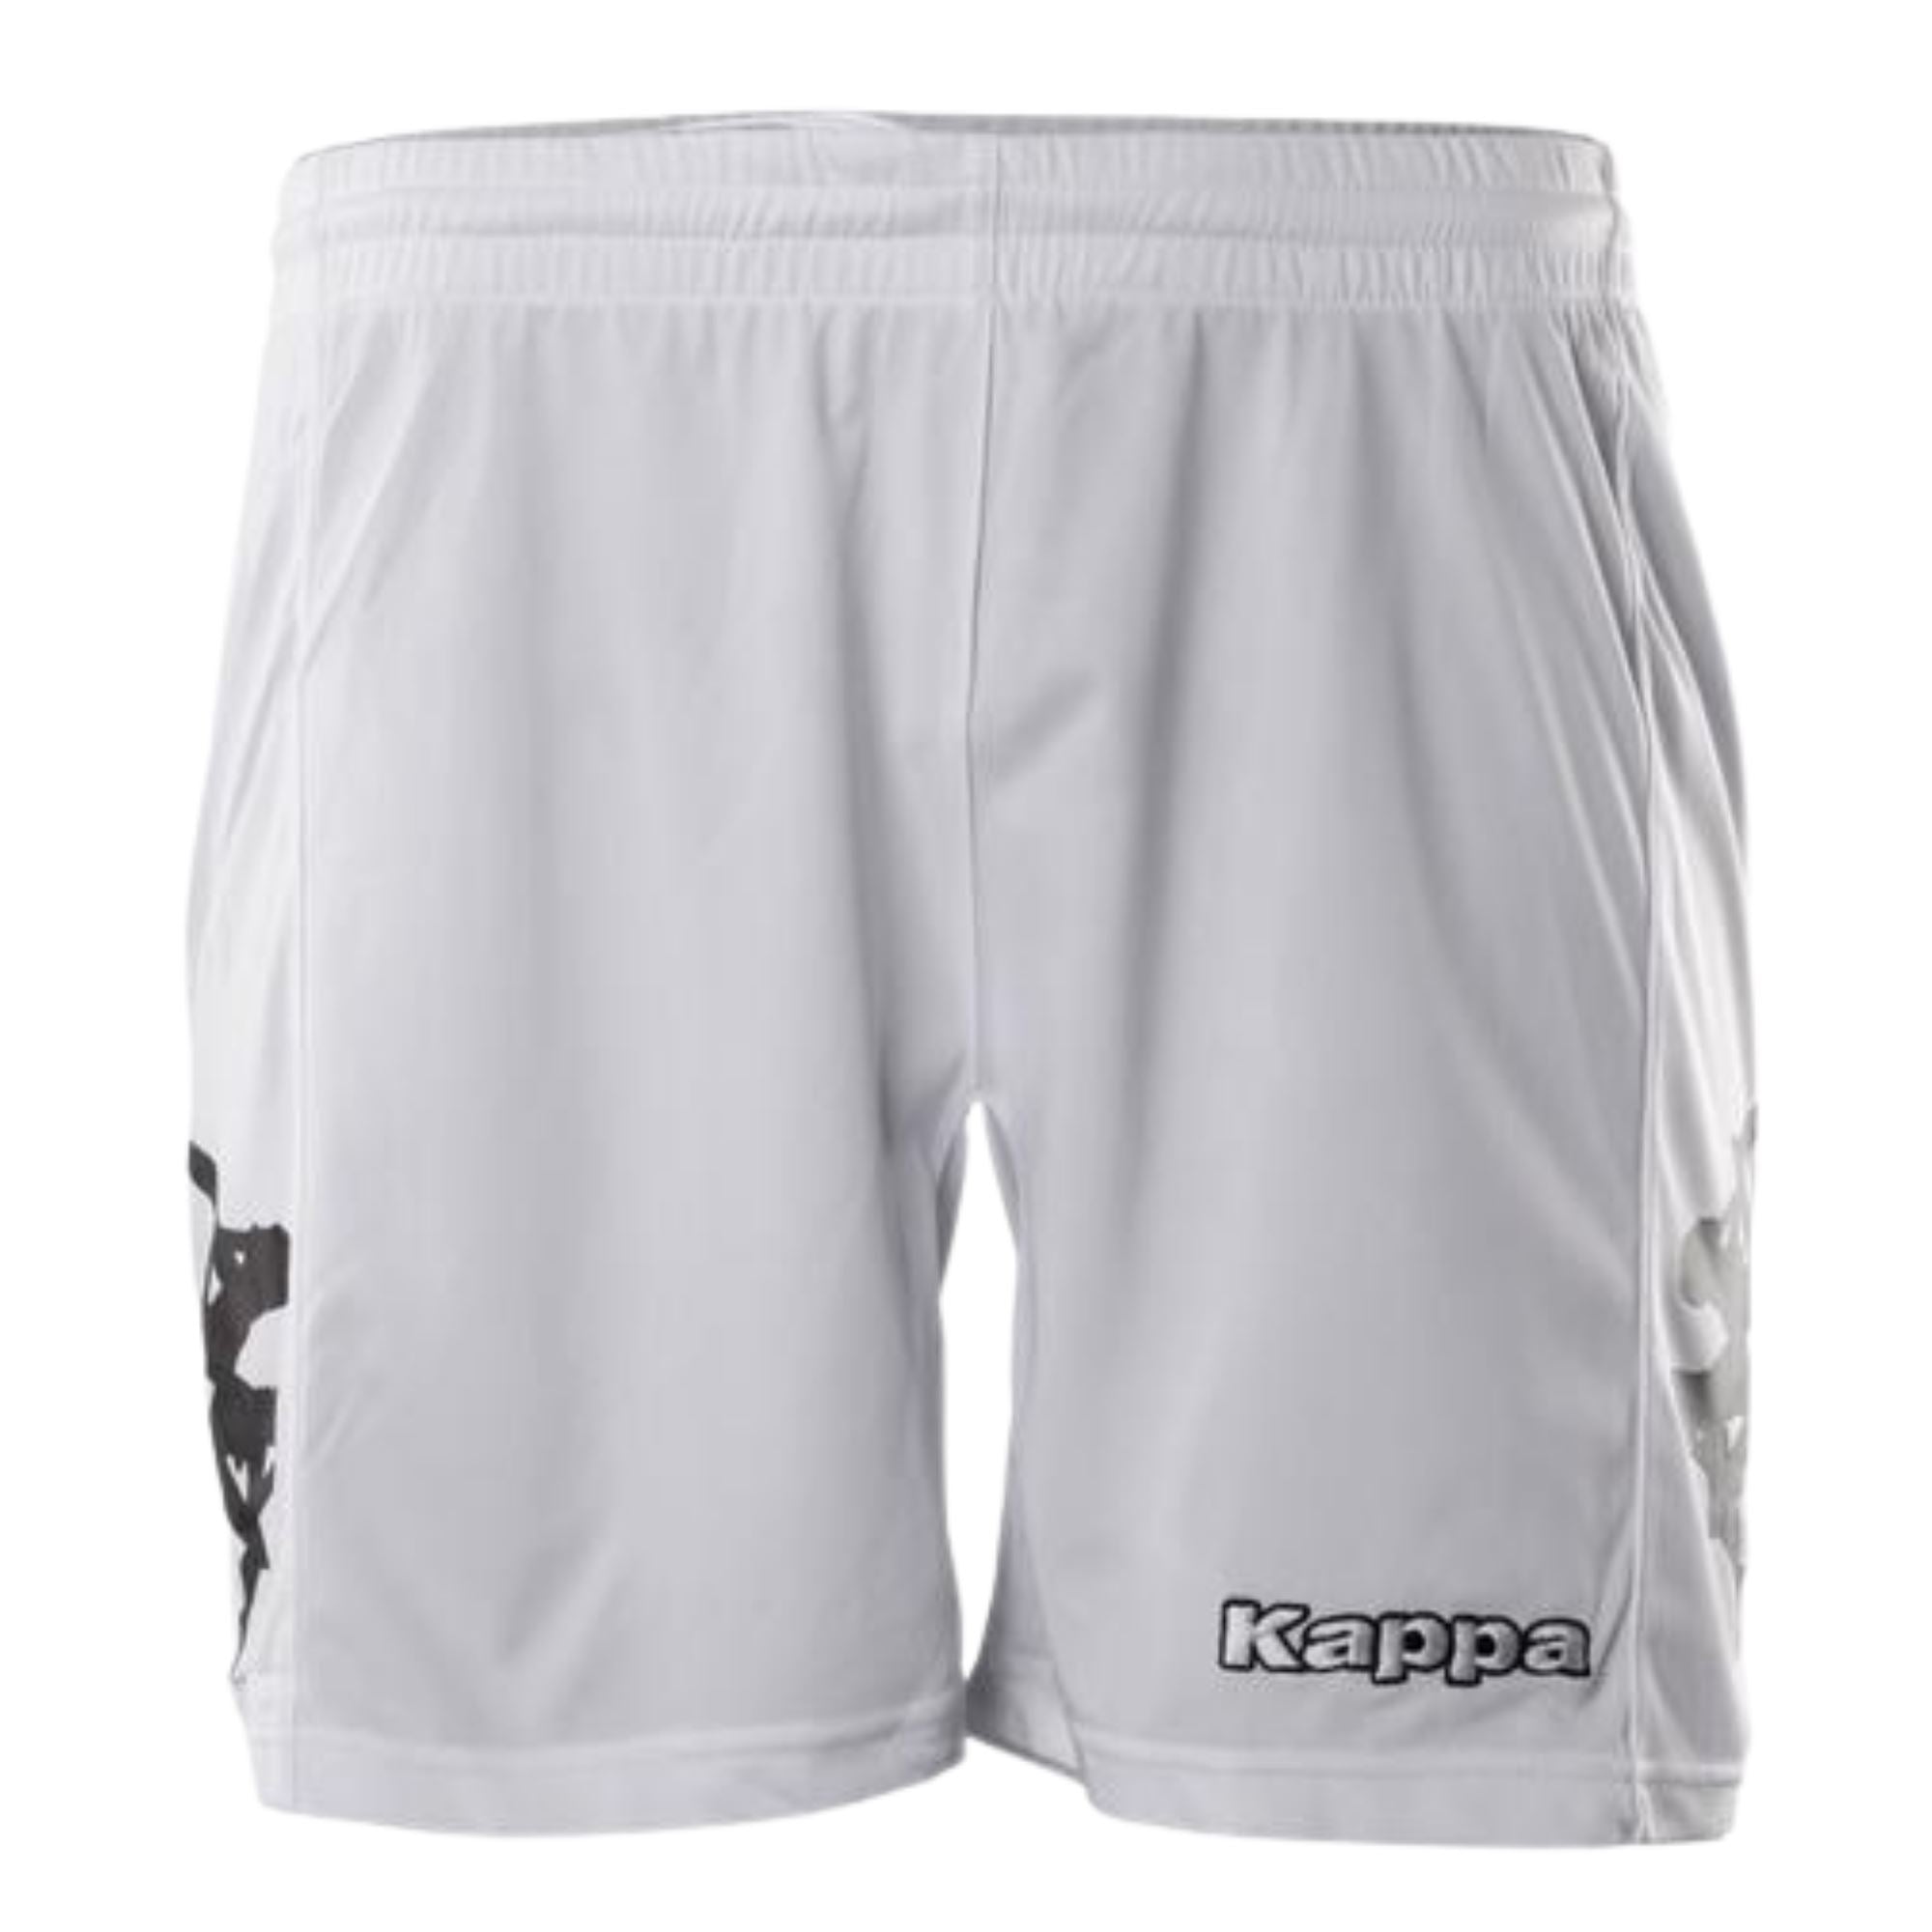 Kappa Youth Shorts - ITASPORT